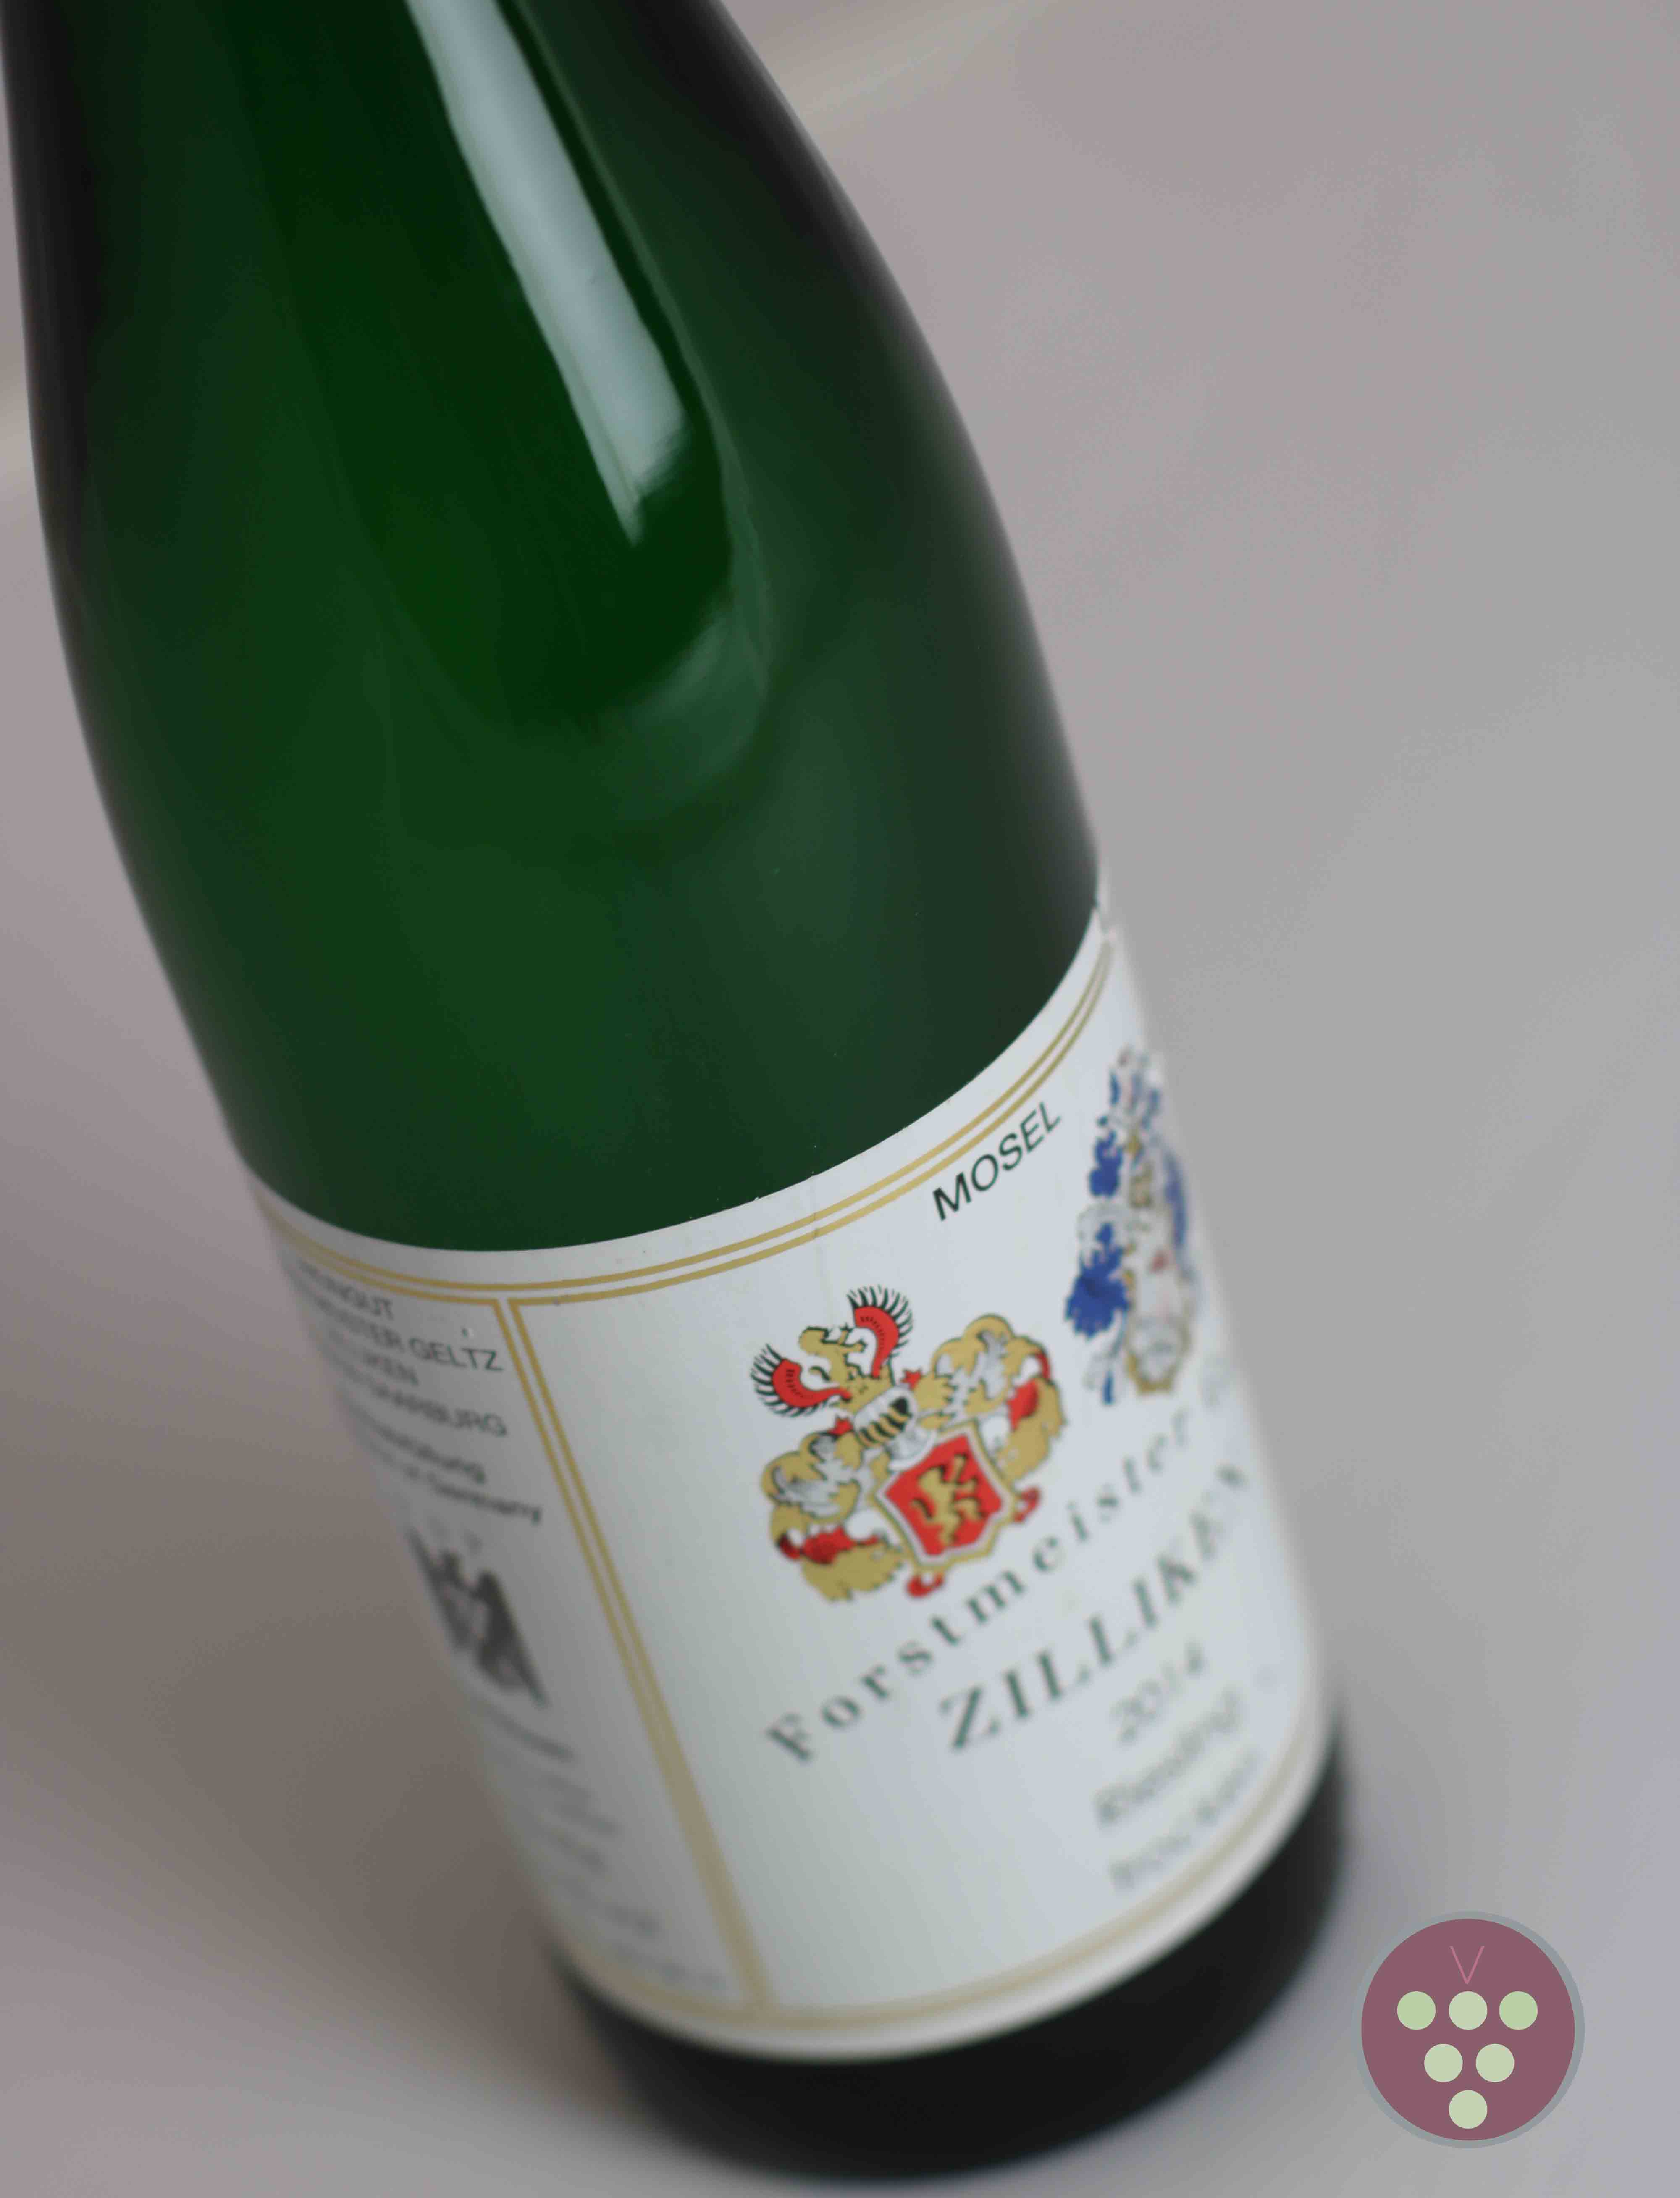 Forstmeister Geltz Zilliken | Riesling Qualitätswein 2014